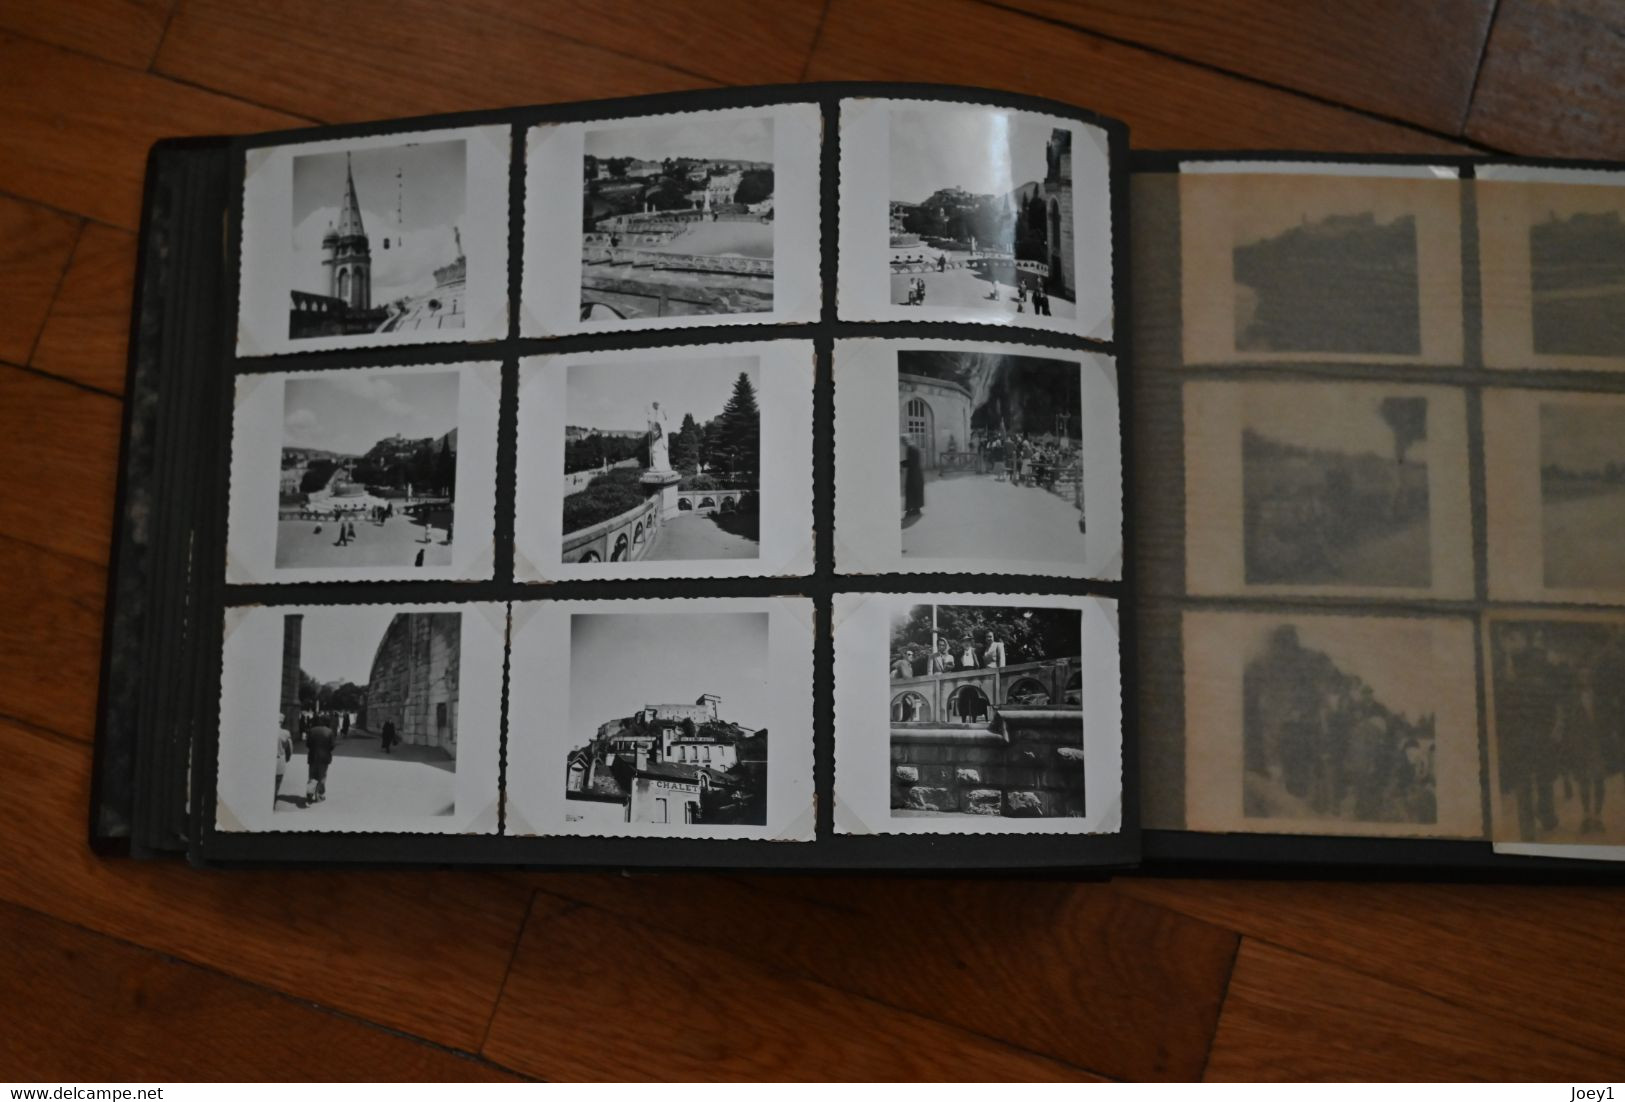 Album photos années 30 et 40 Bordeaux la gare,monument ect  et sa région et Collioure... 128 photos